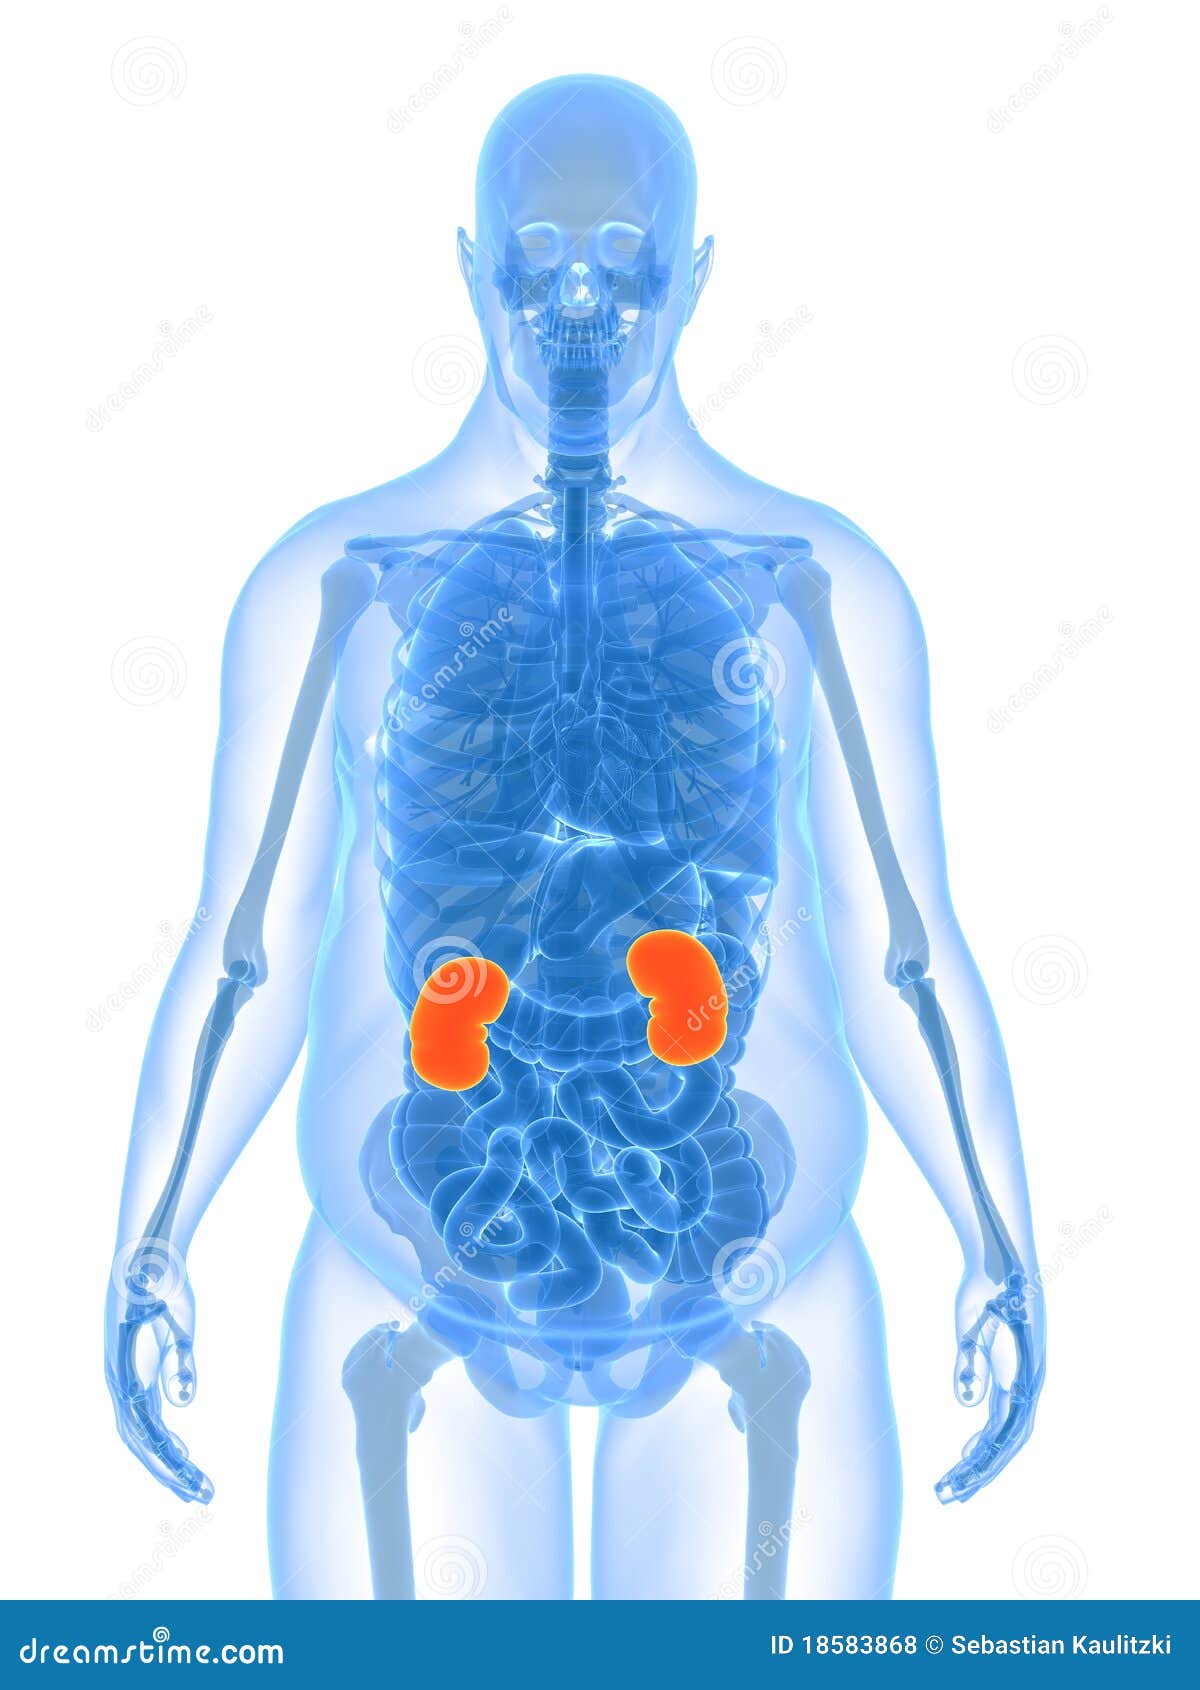 Overweight Male Anatomy - Kidney Stock Illustration - Illustration of